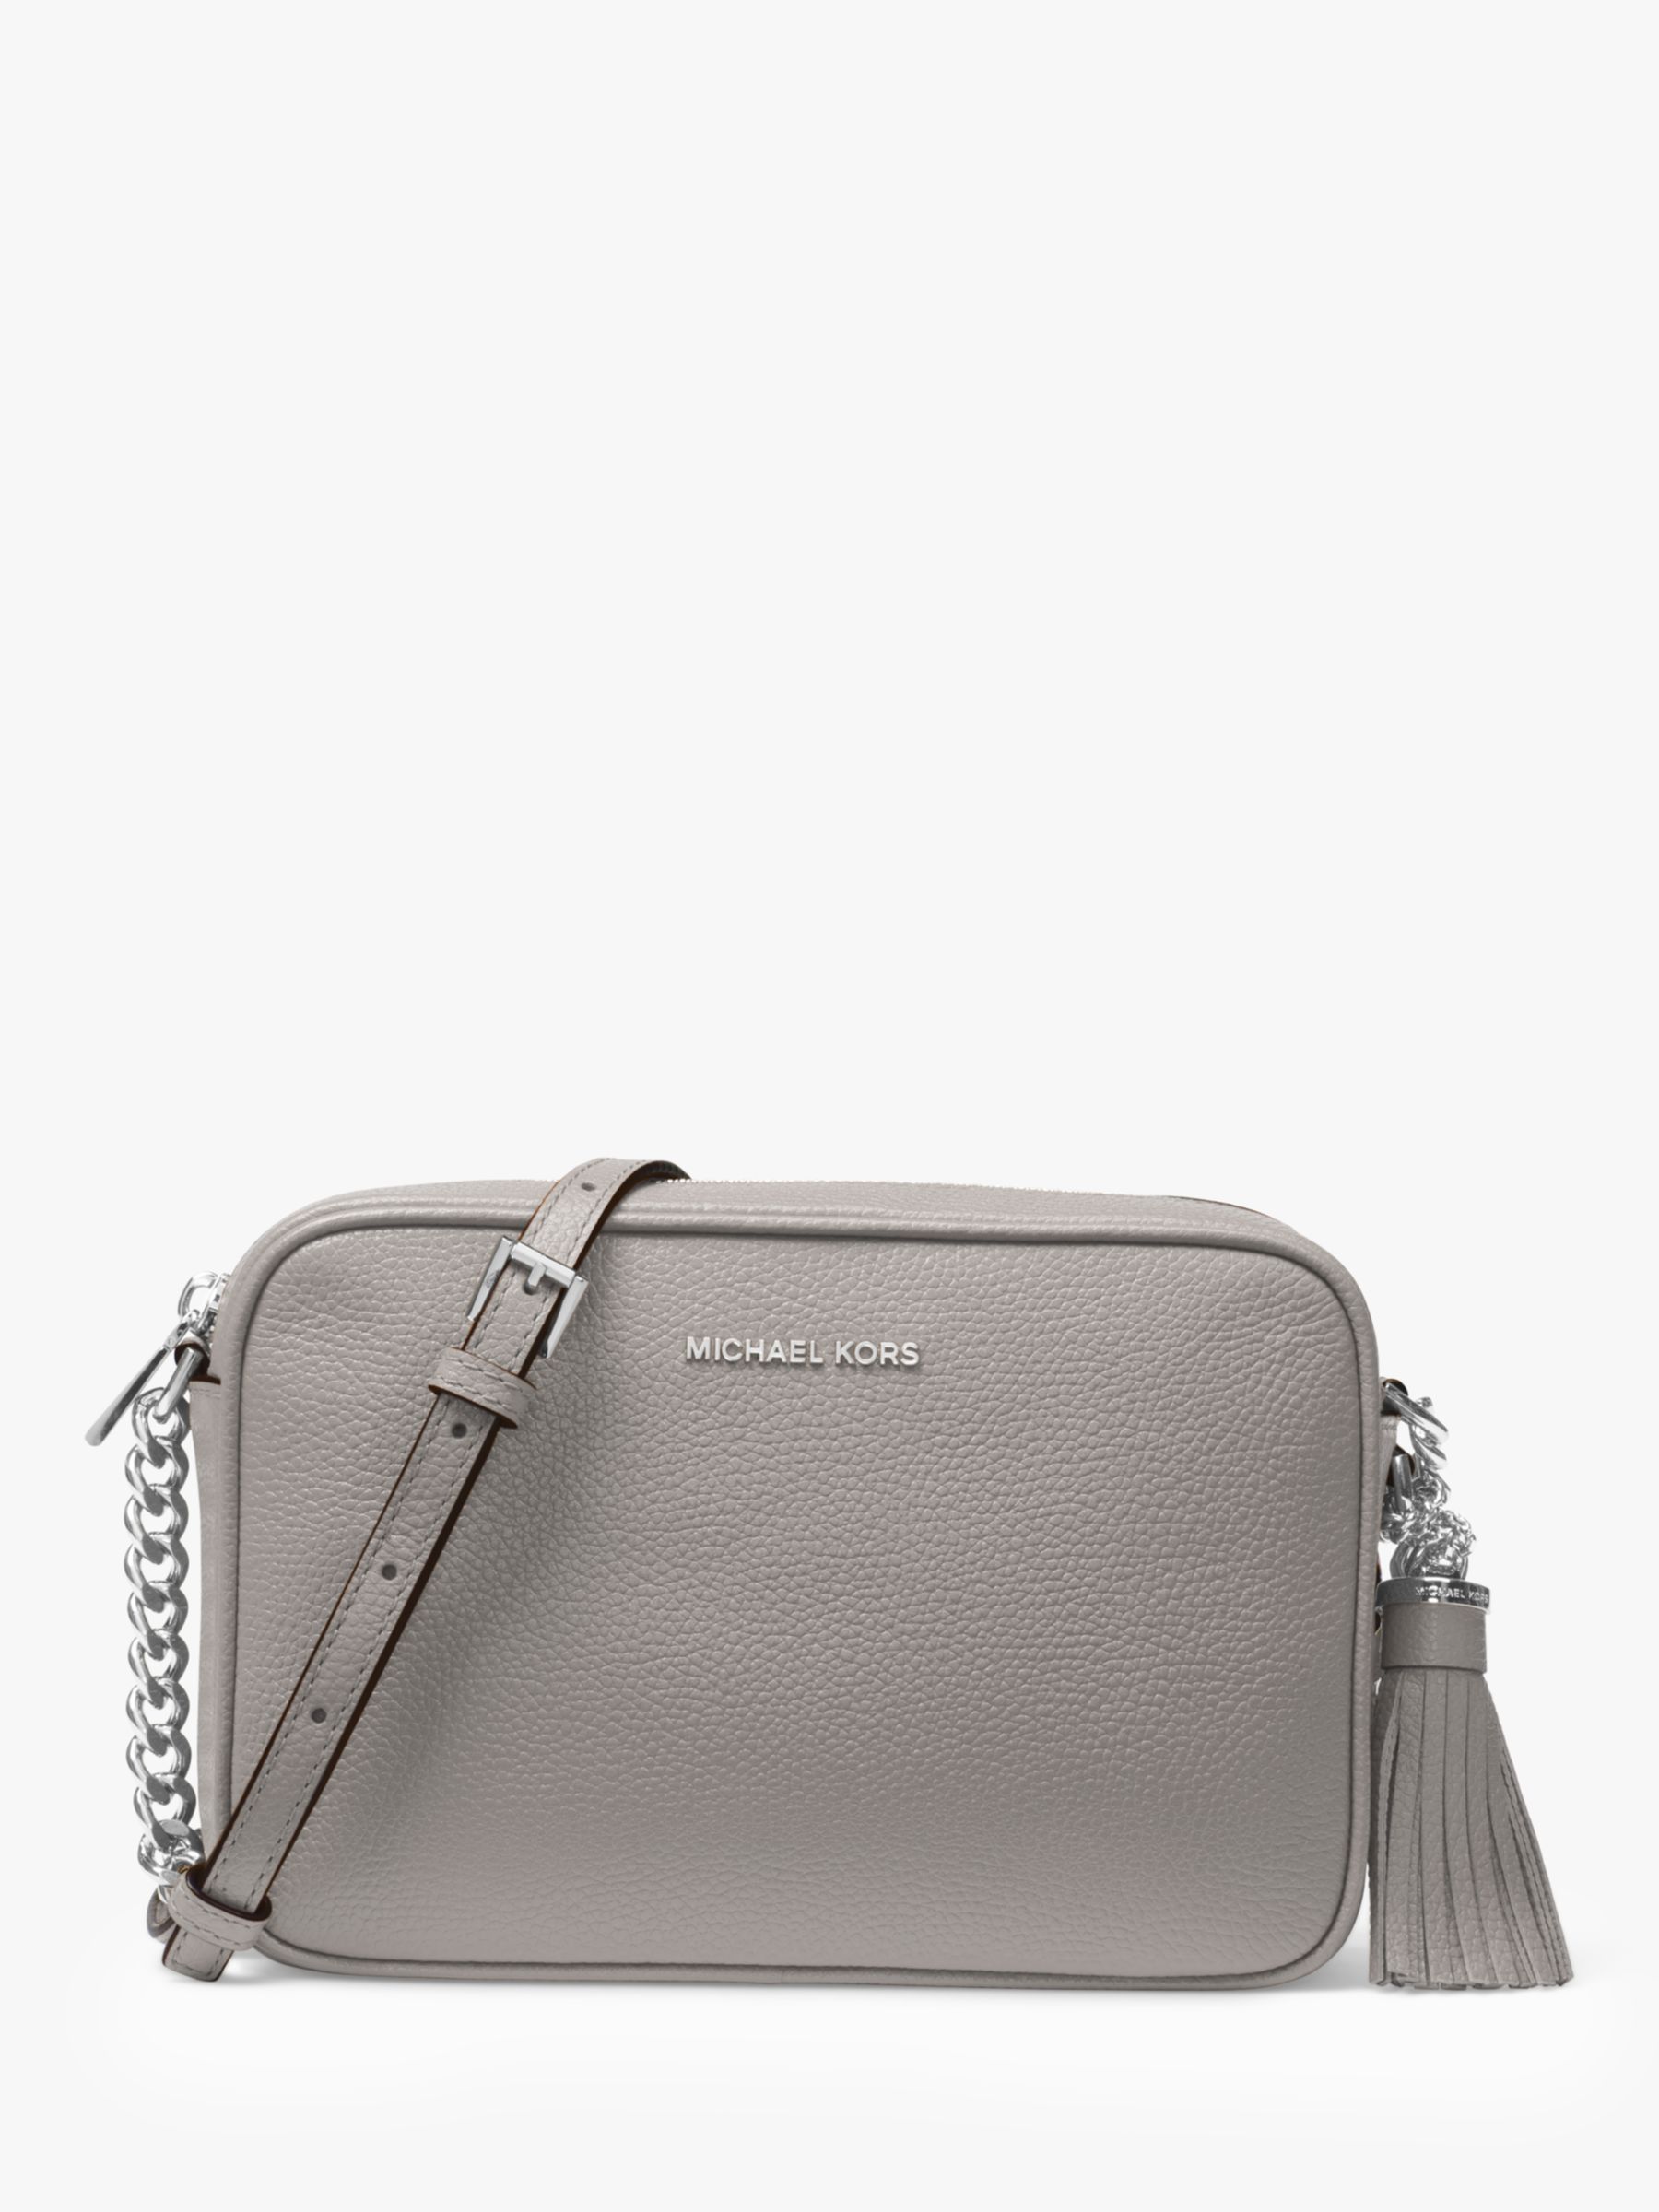 Women's Grey Michael Kors Handbags, Bags & Purses | John Lewis & Partners